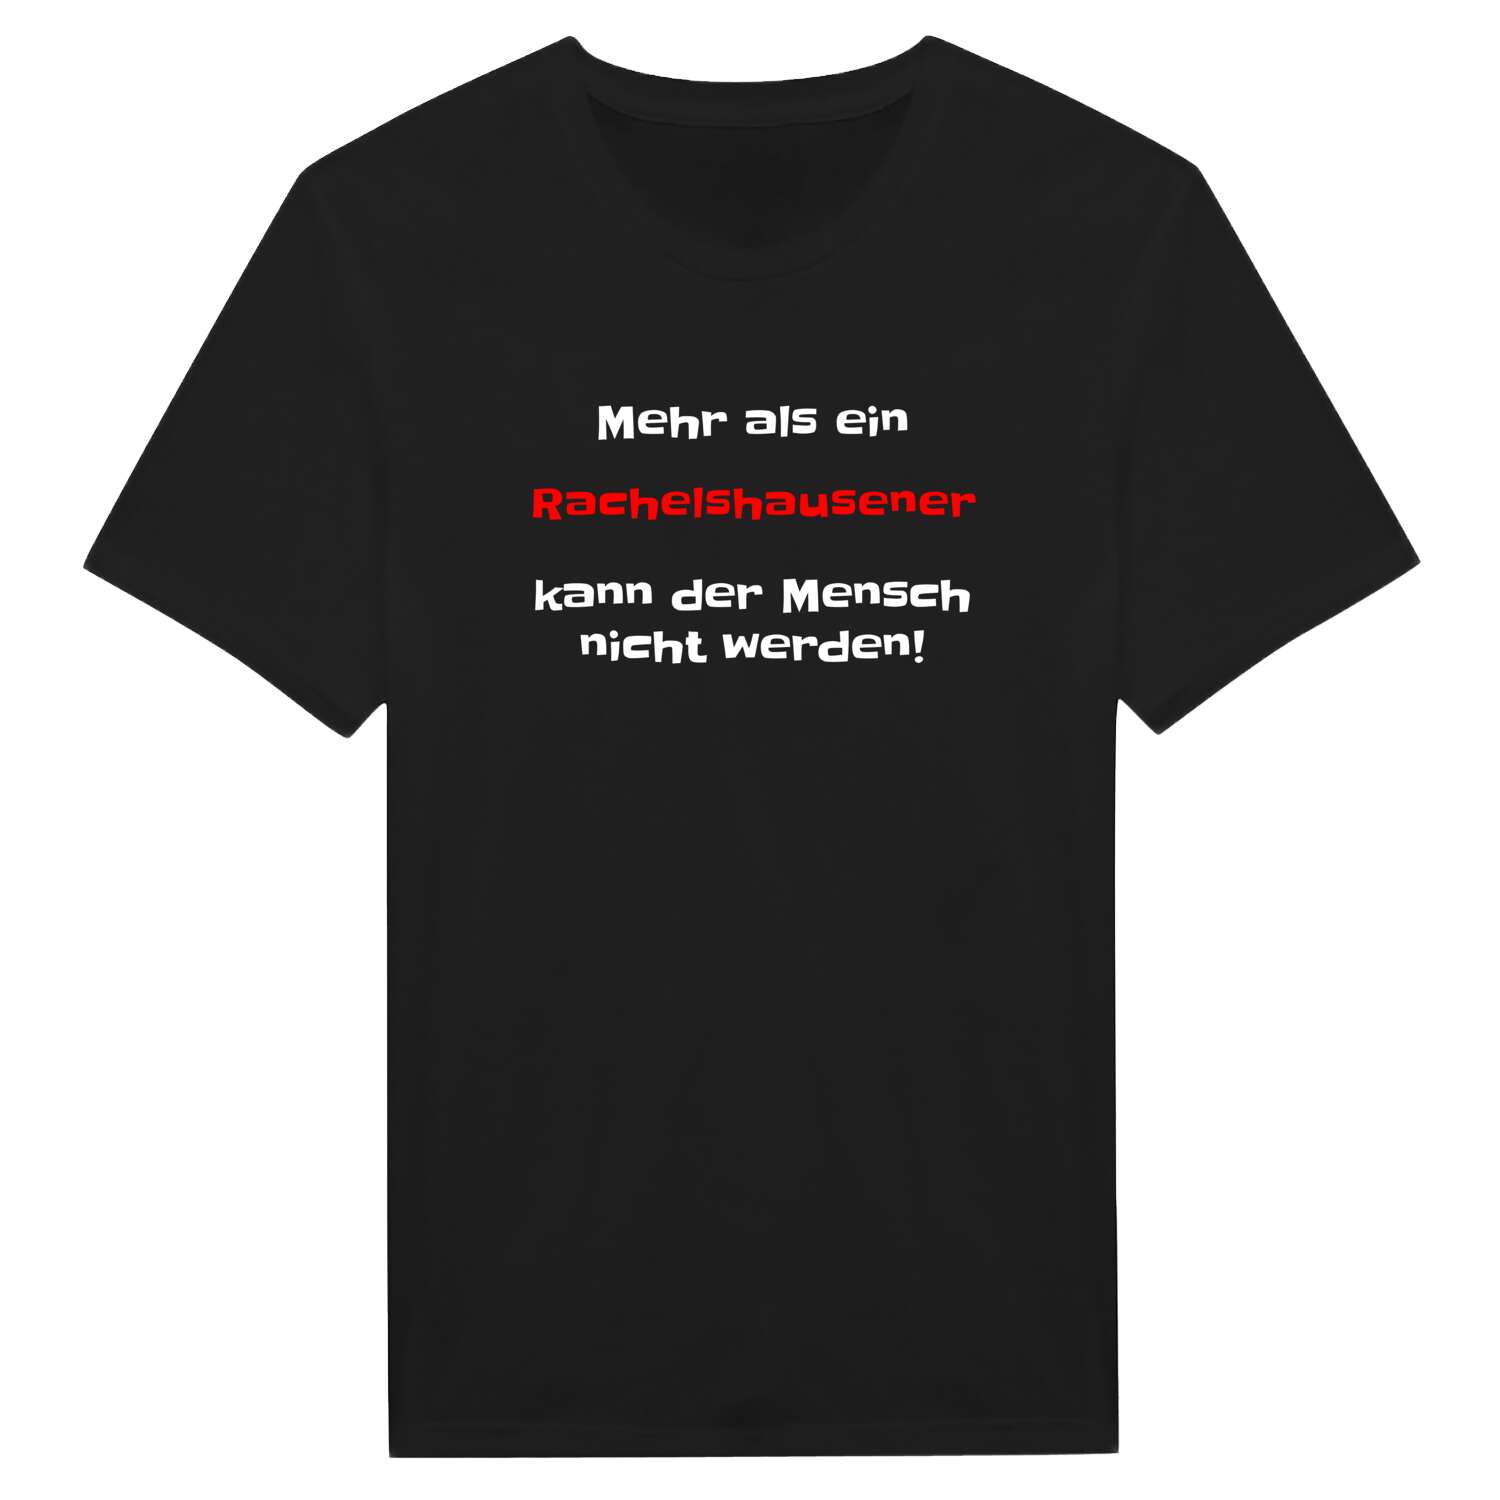 Rachelshausen T-Shirt »Mehr als ein«